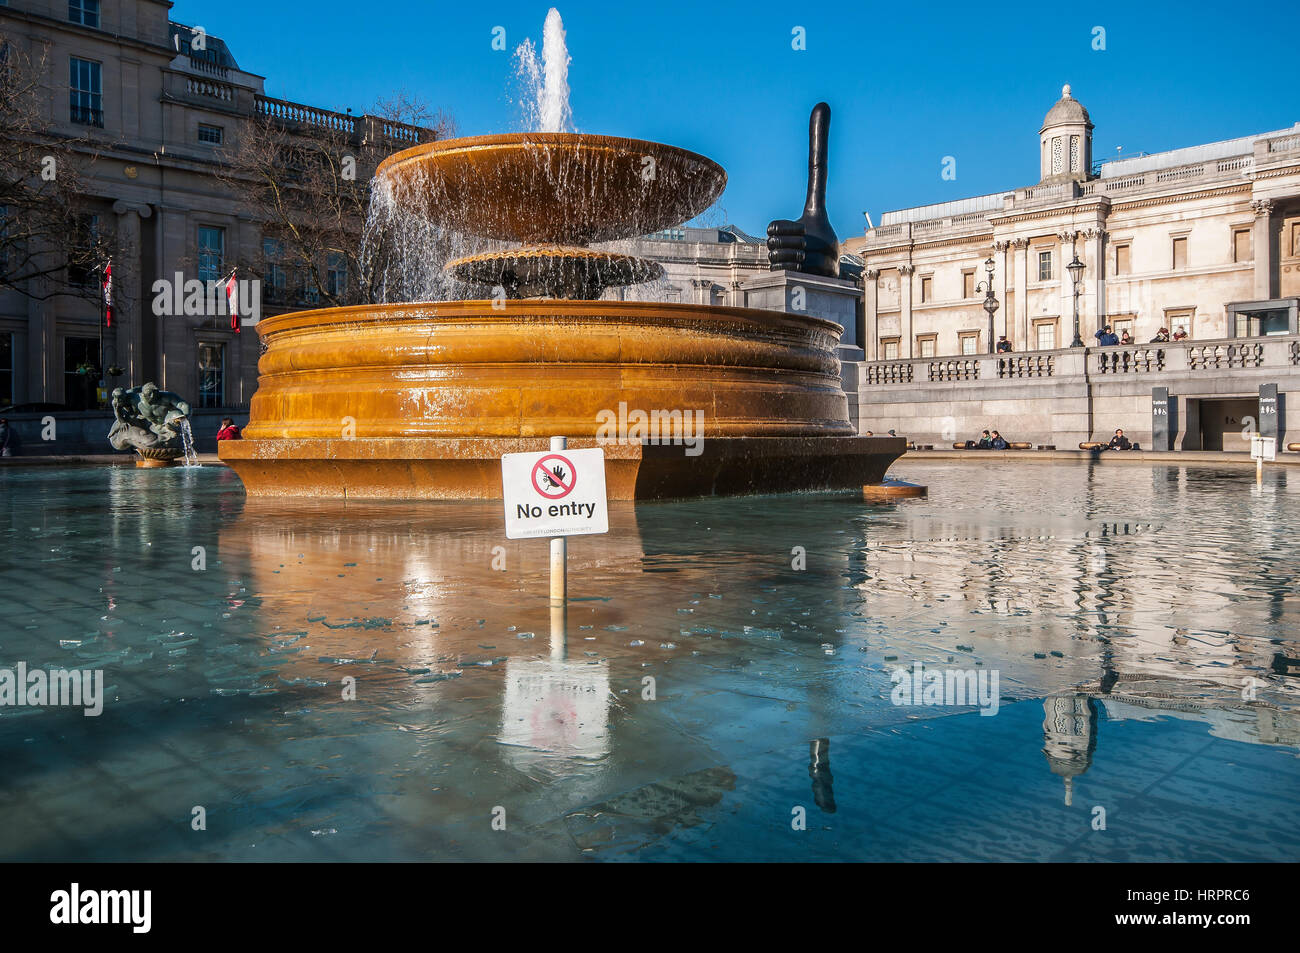 Fontaine à Trafalgar Square, Londres, Royaume-Uni, avec de la glace sur l'eau en hiver. Ciel bleu vif Banque D'Images